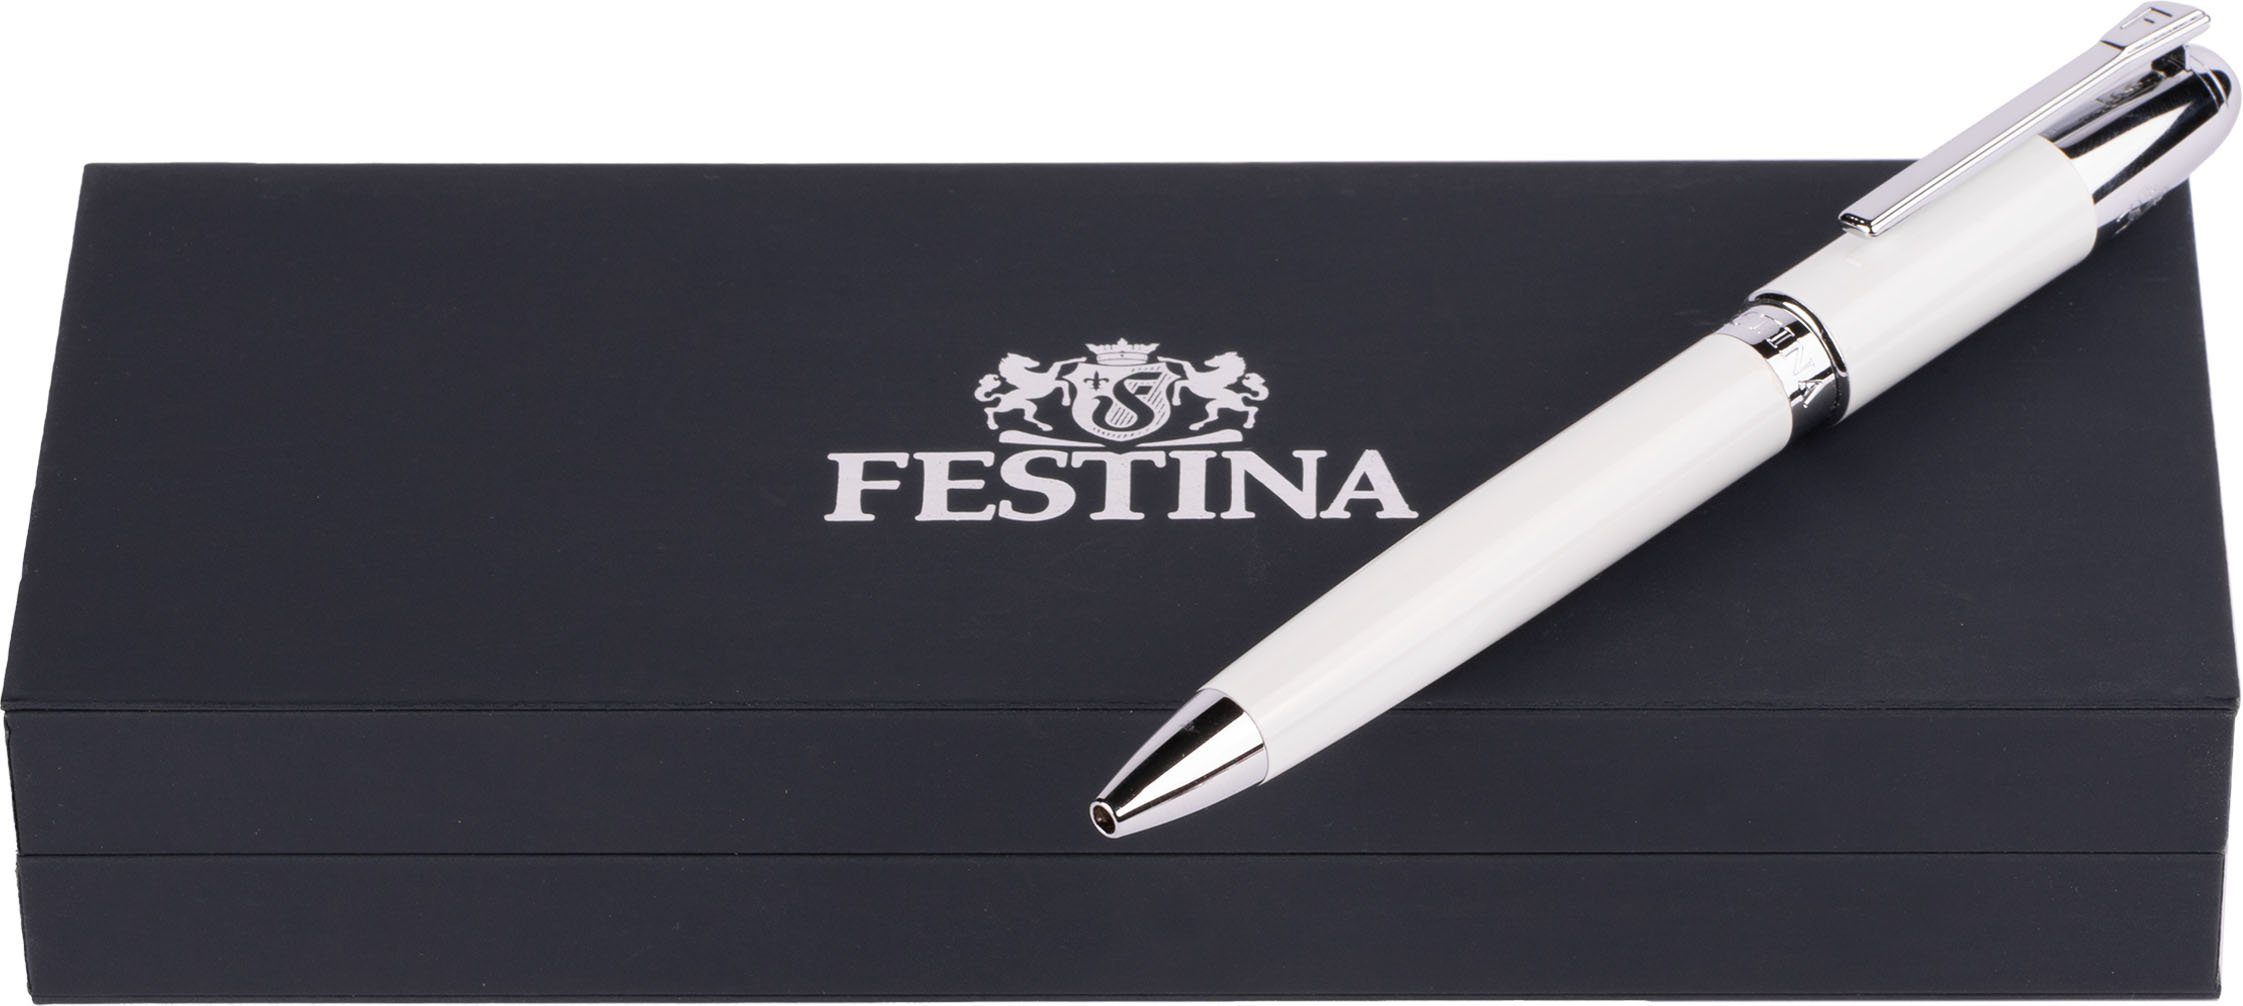 Festina Kugelschreiber Classicals, ideal inklusive Geschenk als auch FWS4110/F, Etui